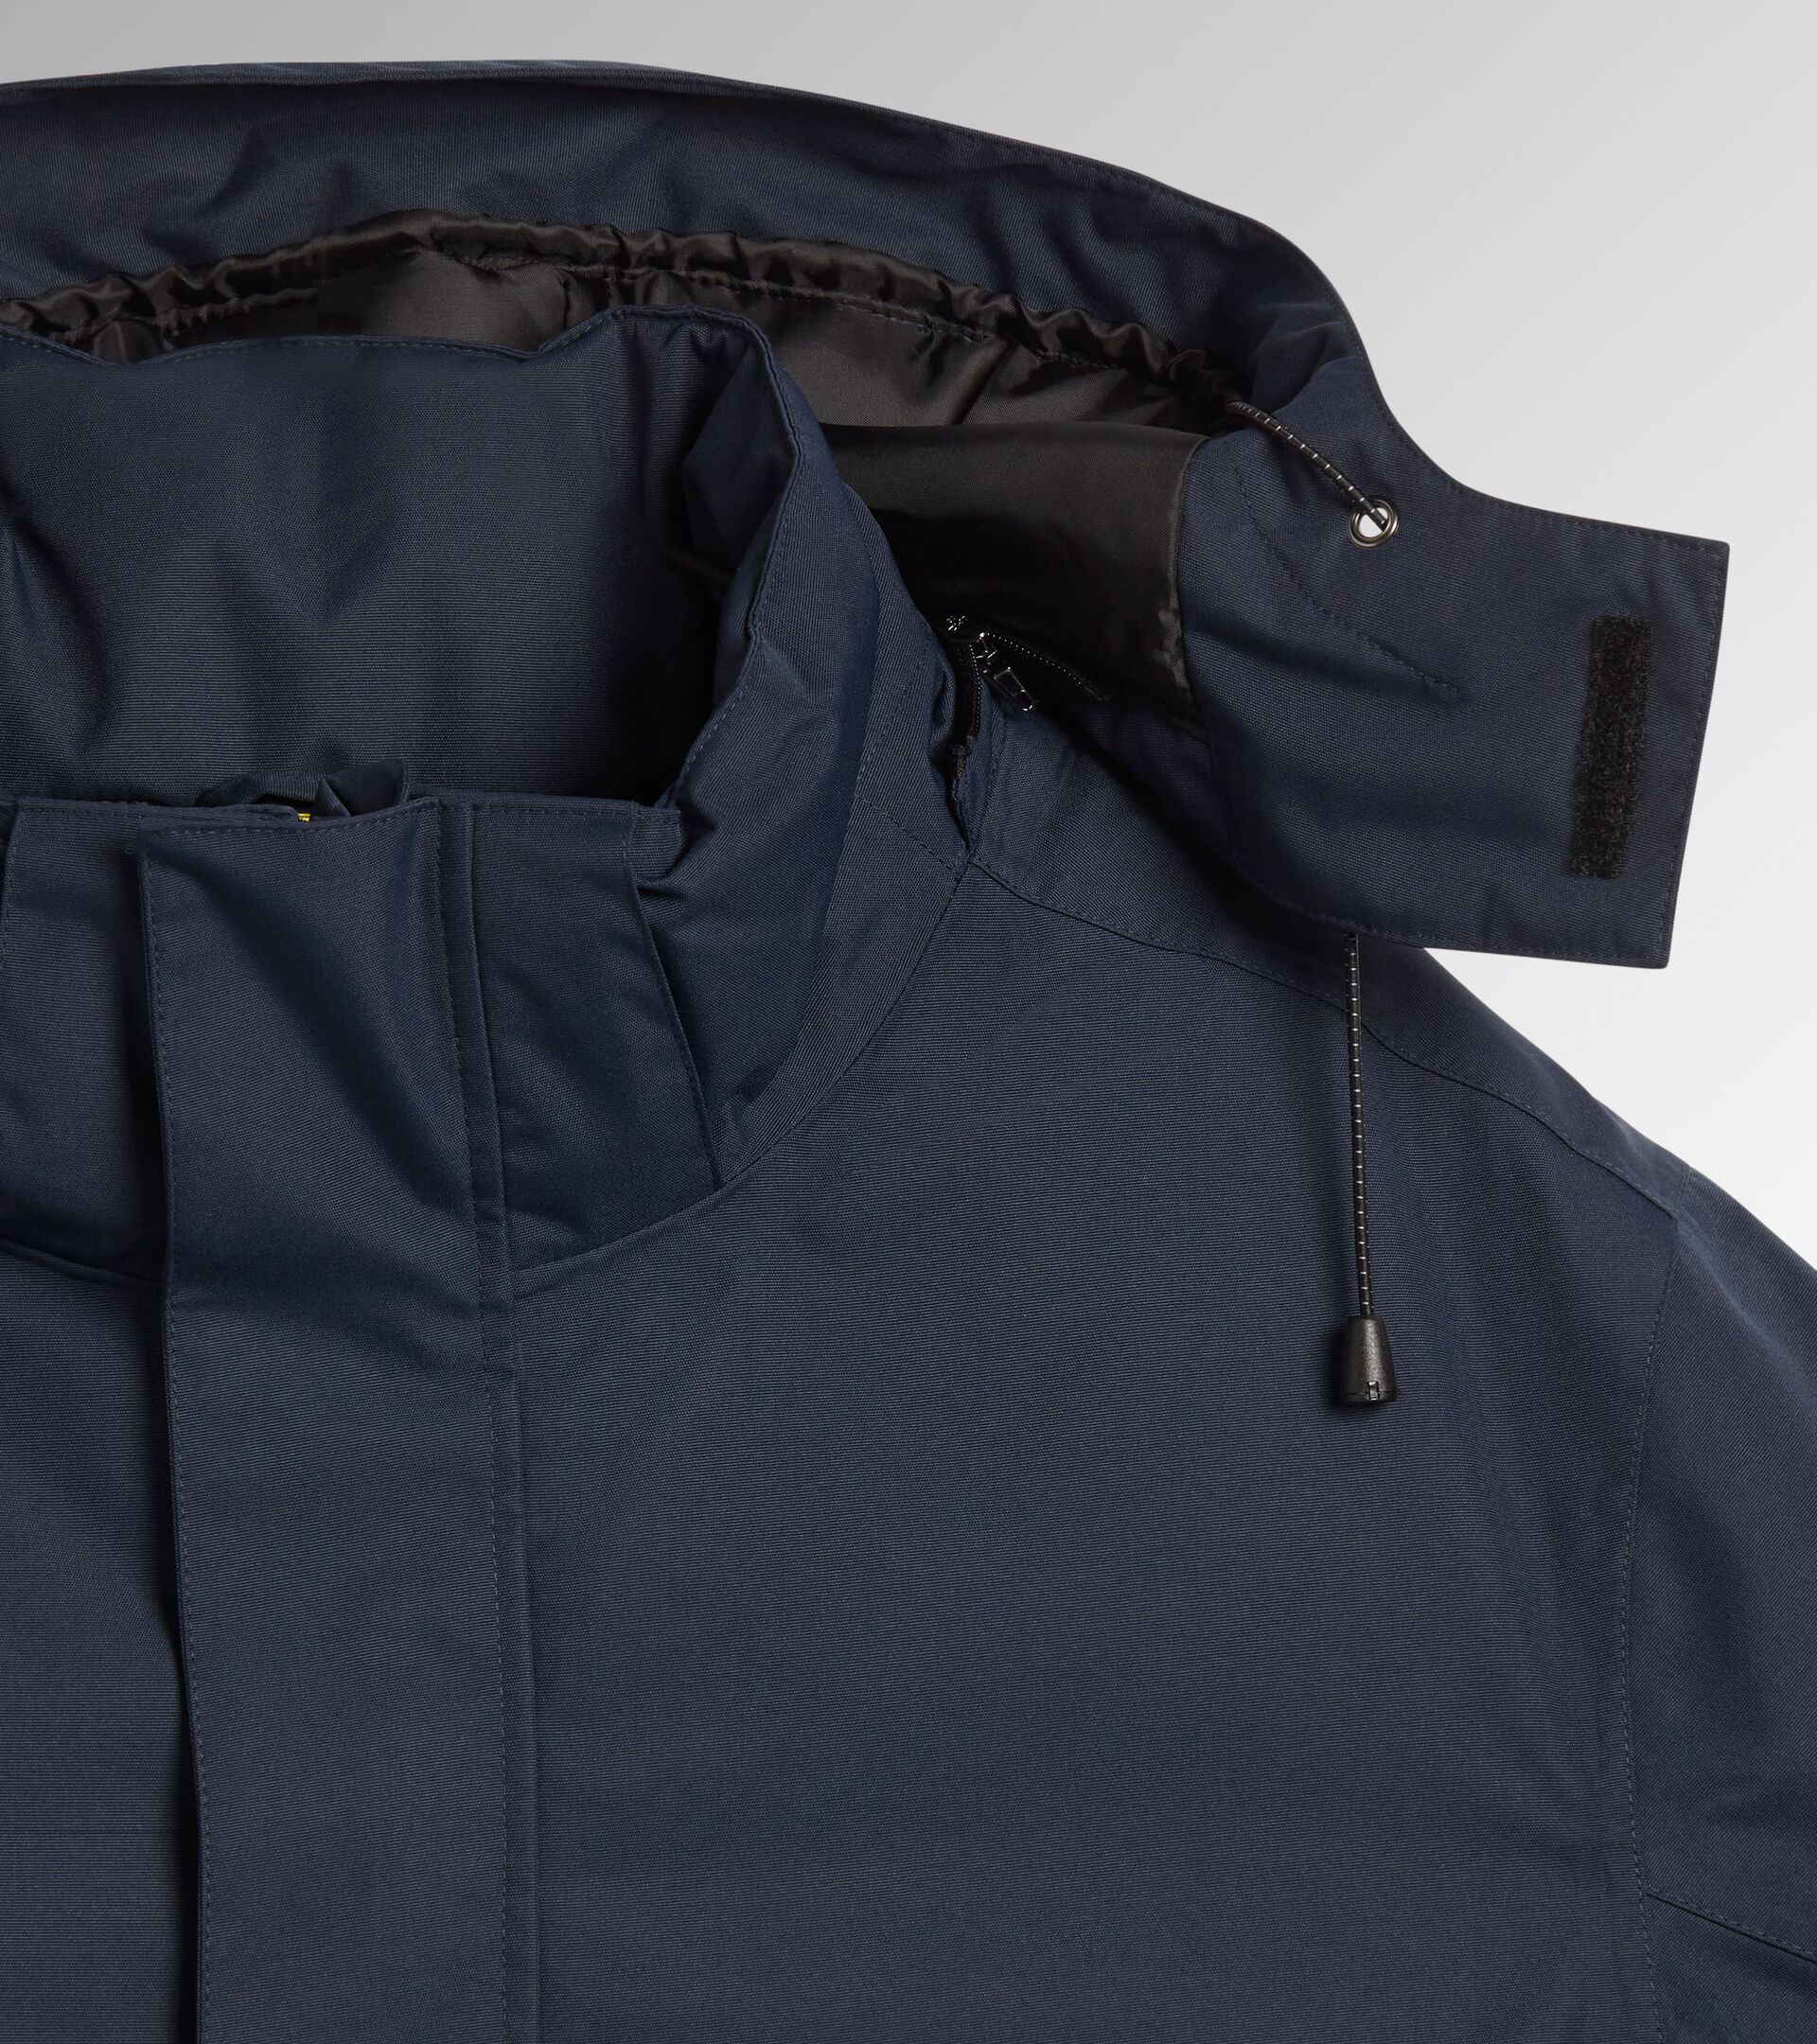 Work jacket PADDED JACKET HYBRID TACTIC BLUE DENIM - Utility